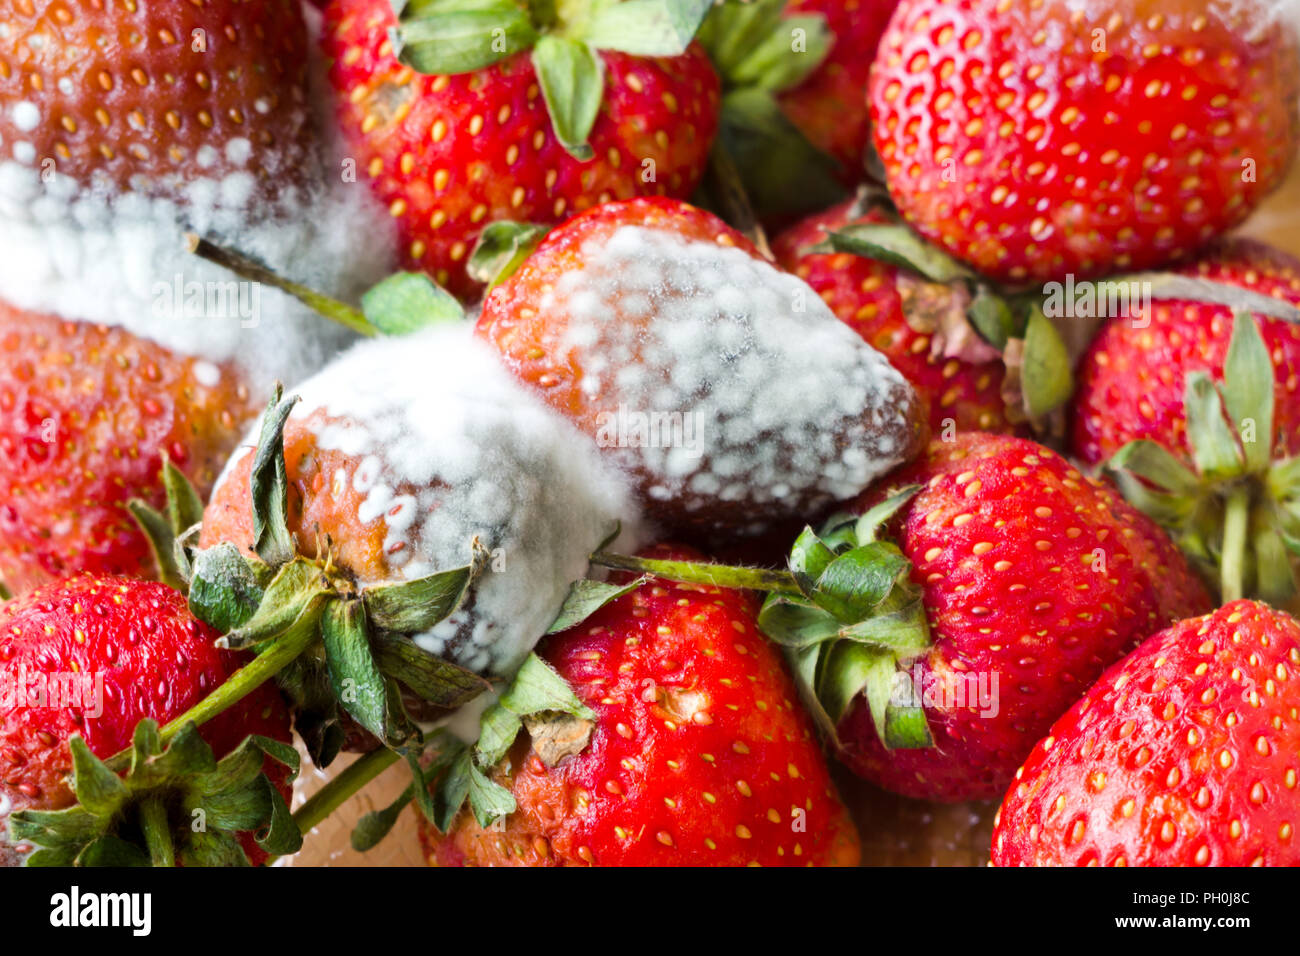 El moho gris sobre rojo maduro fresas frescas de la granja se encuentra en proceso de QC antes del envío para vender en el supermercado. Foto de stock